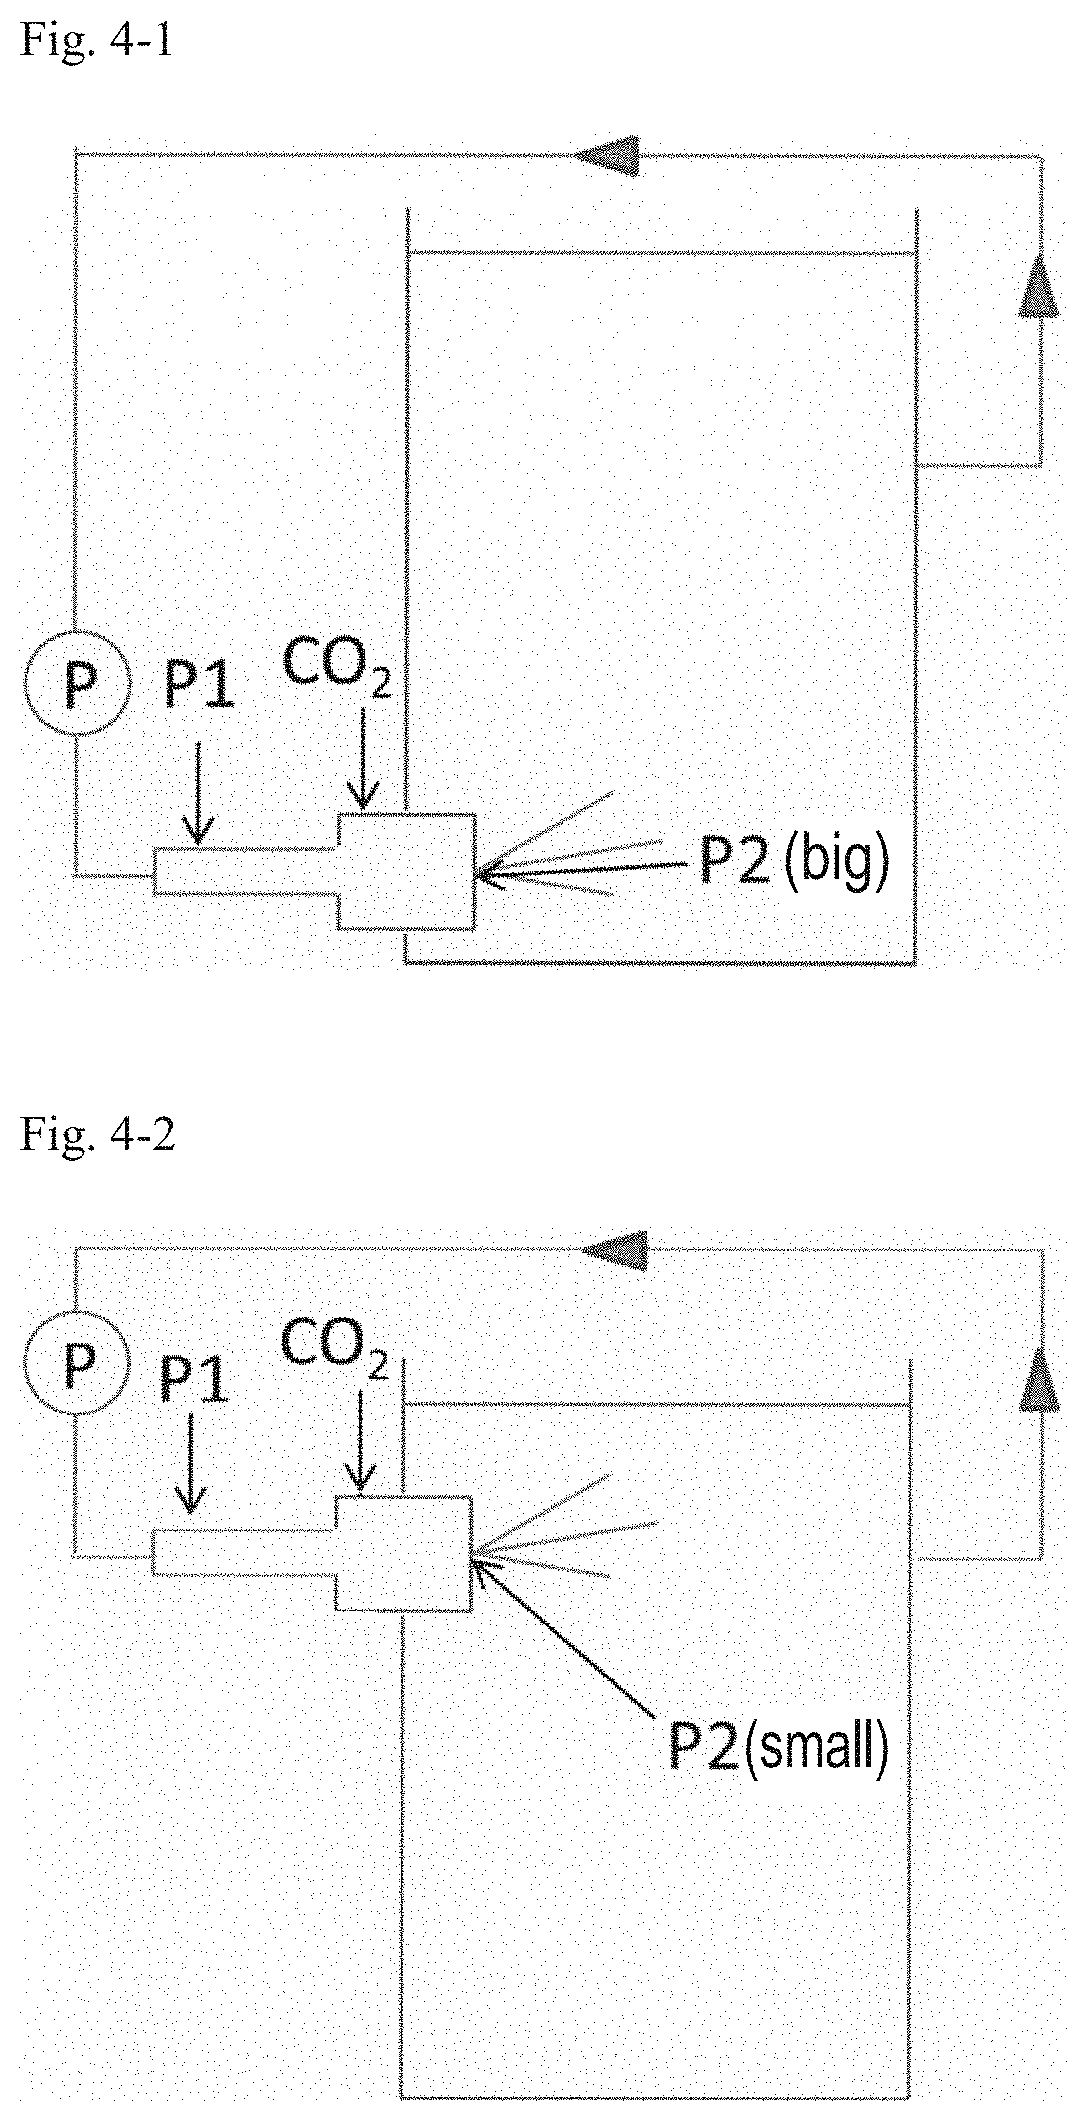 Processes for preparing inorganic carbonates